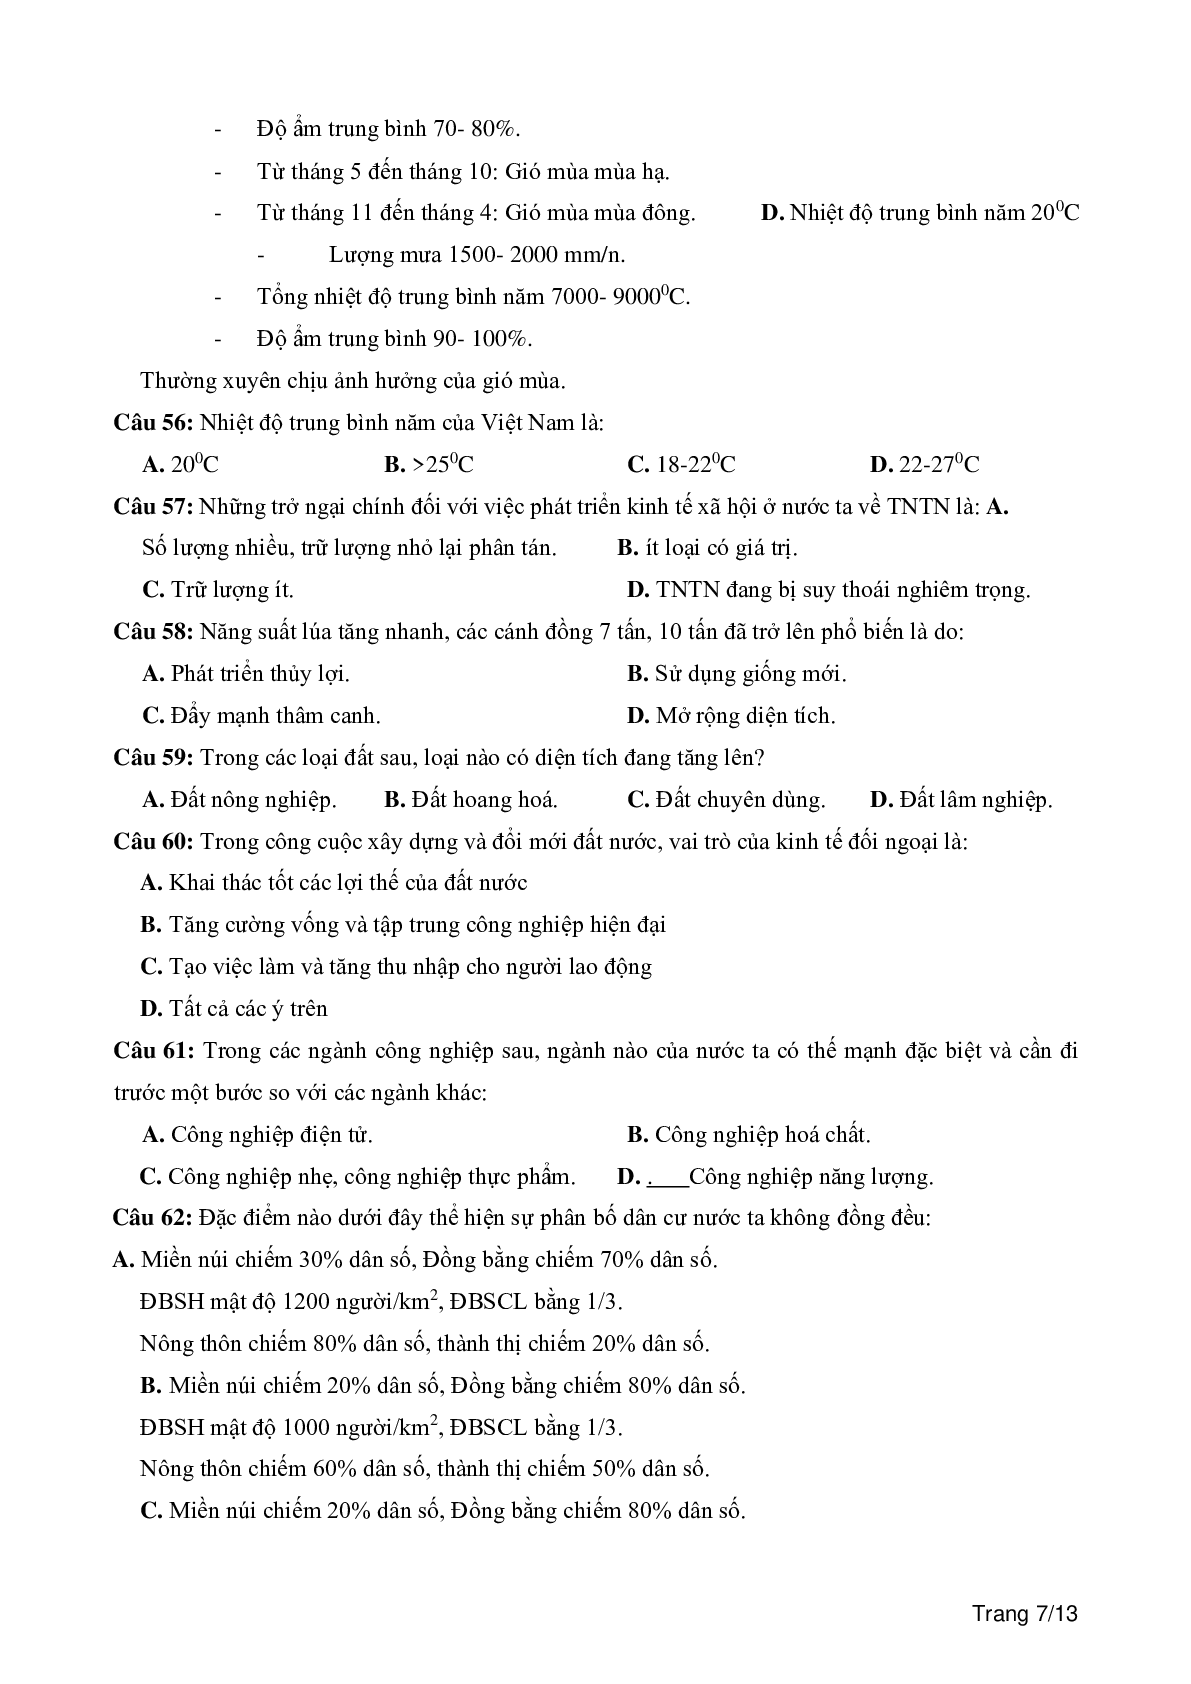 100 câu trắc nghiệm khách quan môn Địa lí lớp 12 (trang 7)